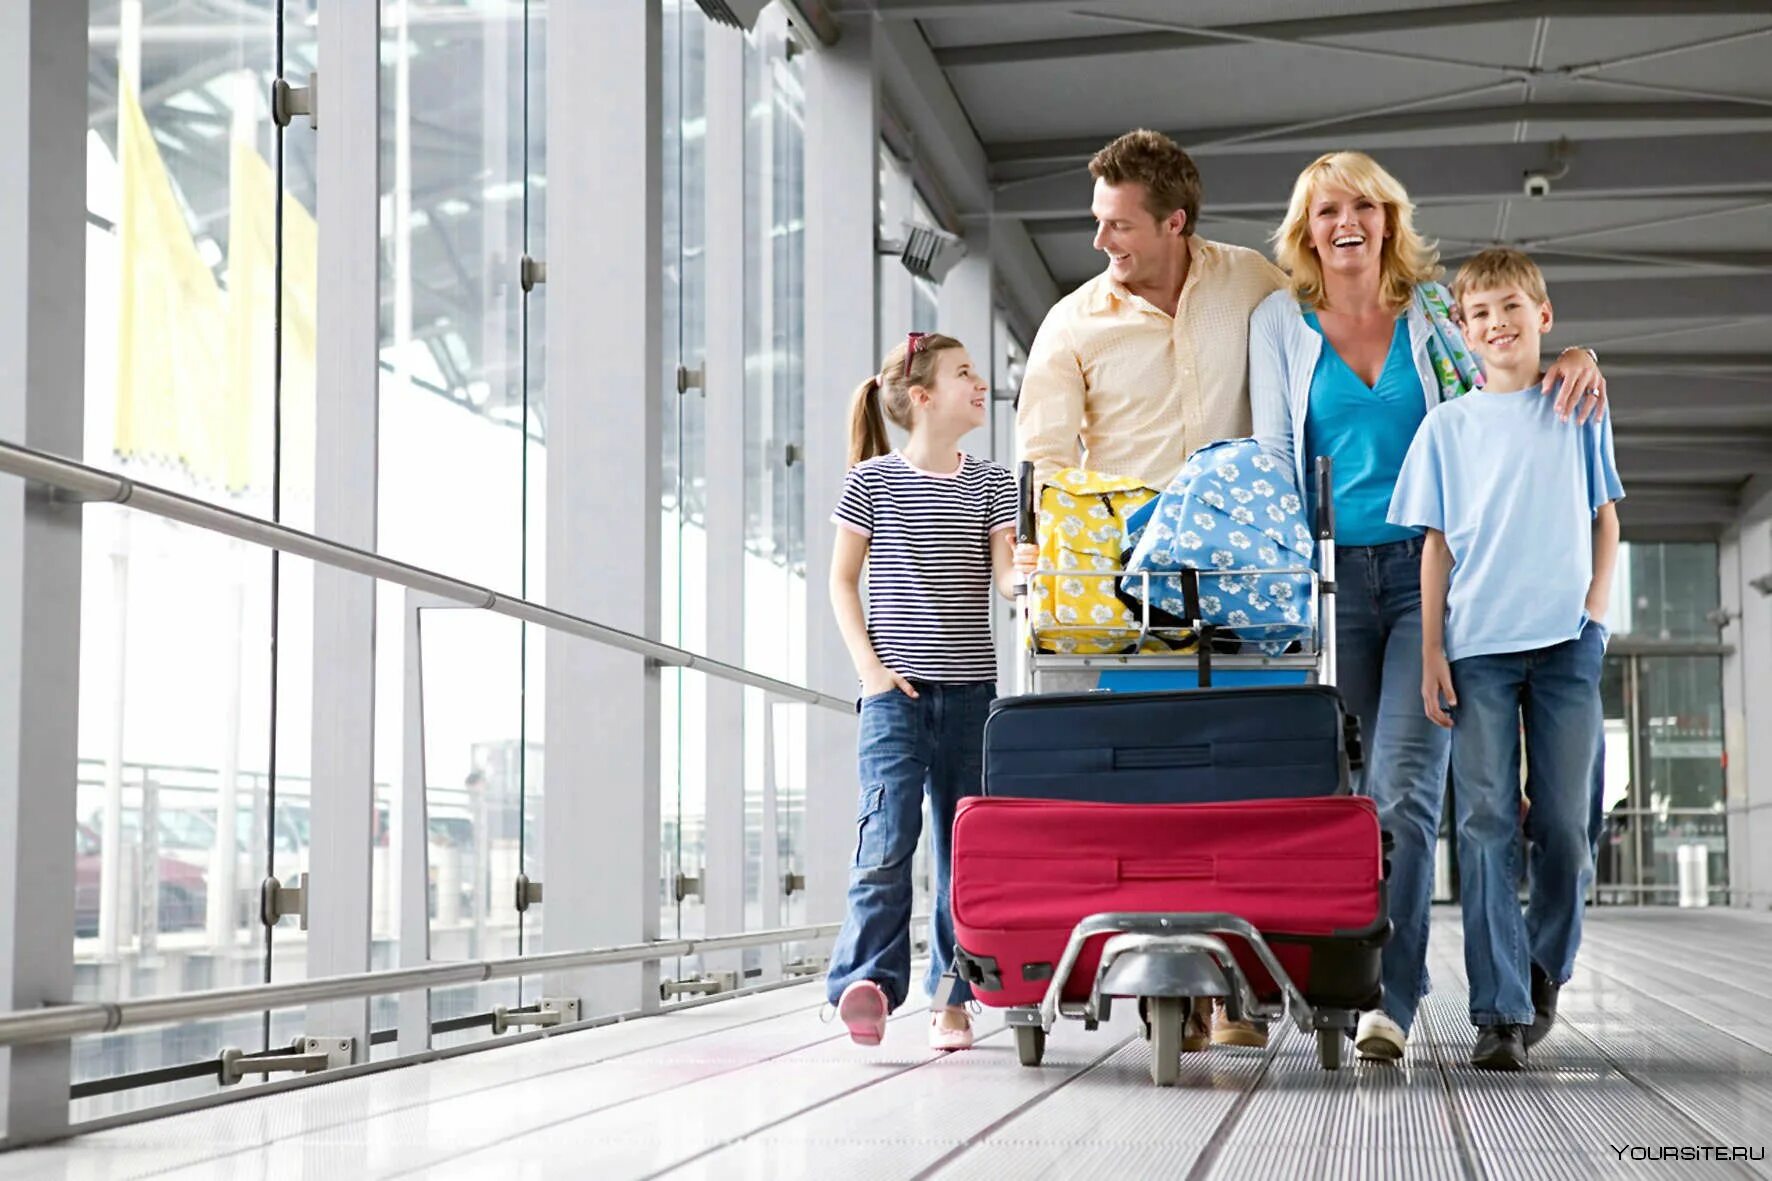 Первое путешествие за границу. Семья с чемоданами. Путешествие с семьей. Семья с чемоданами в аэропорту. Путешествие семья чемоданы.